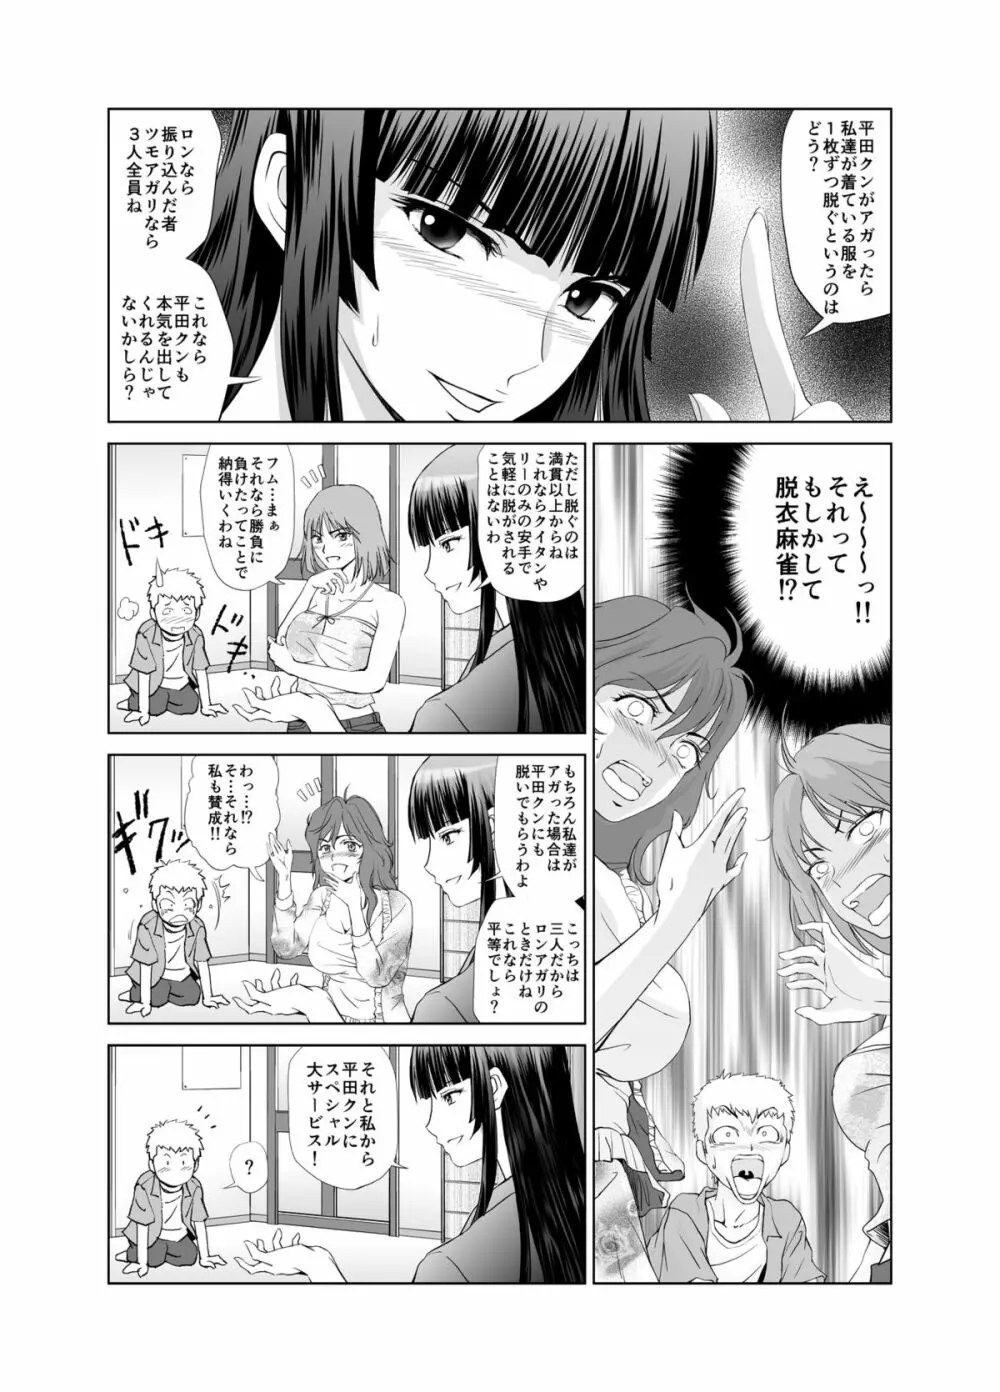 脱衣麻雀～漫画編～【完成版】 11ページ